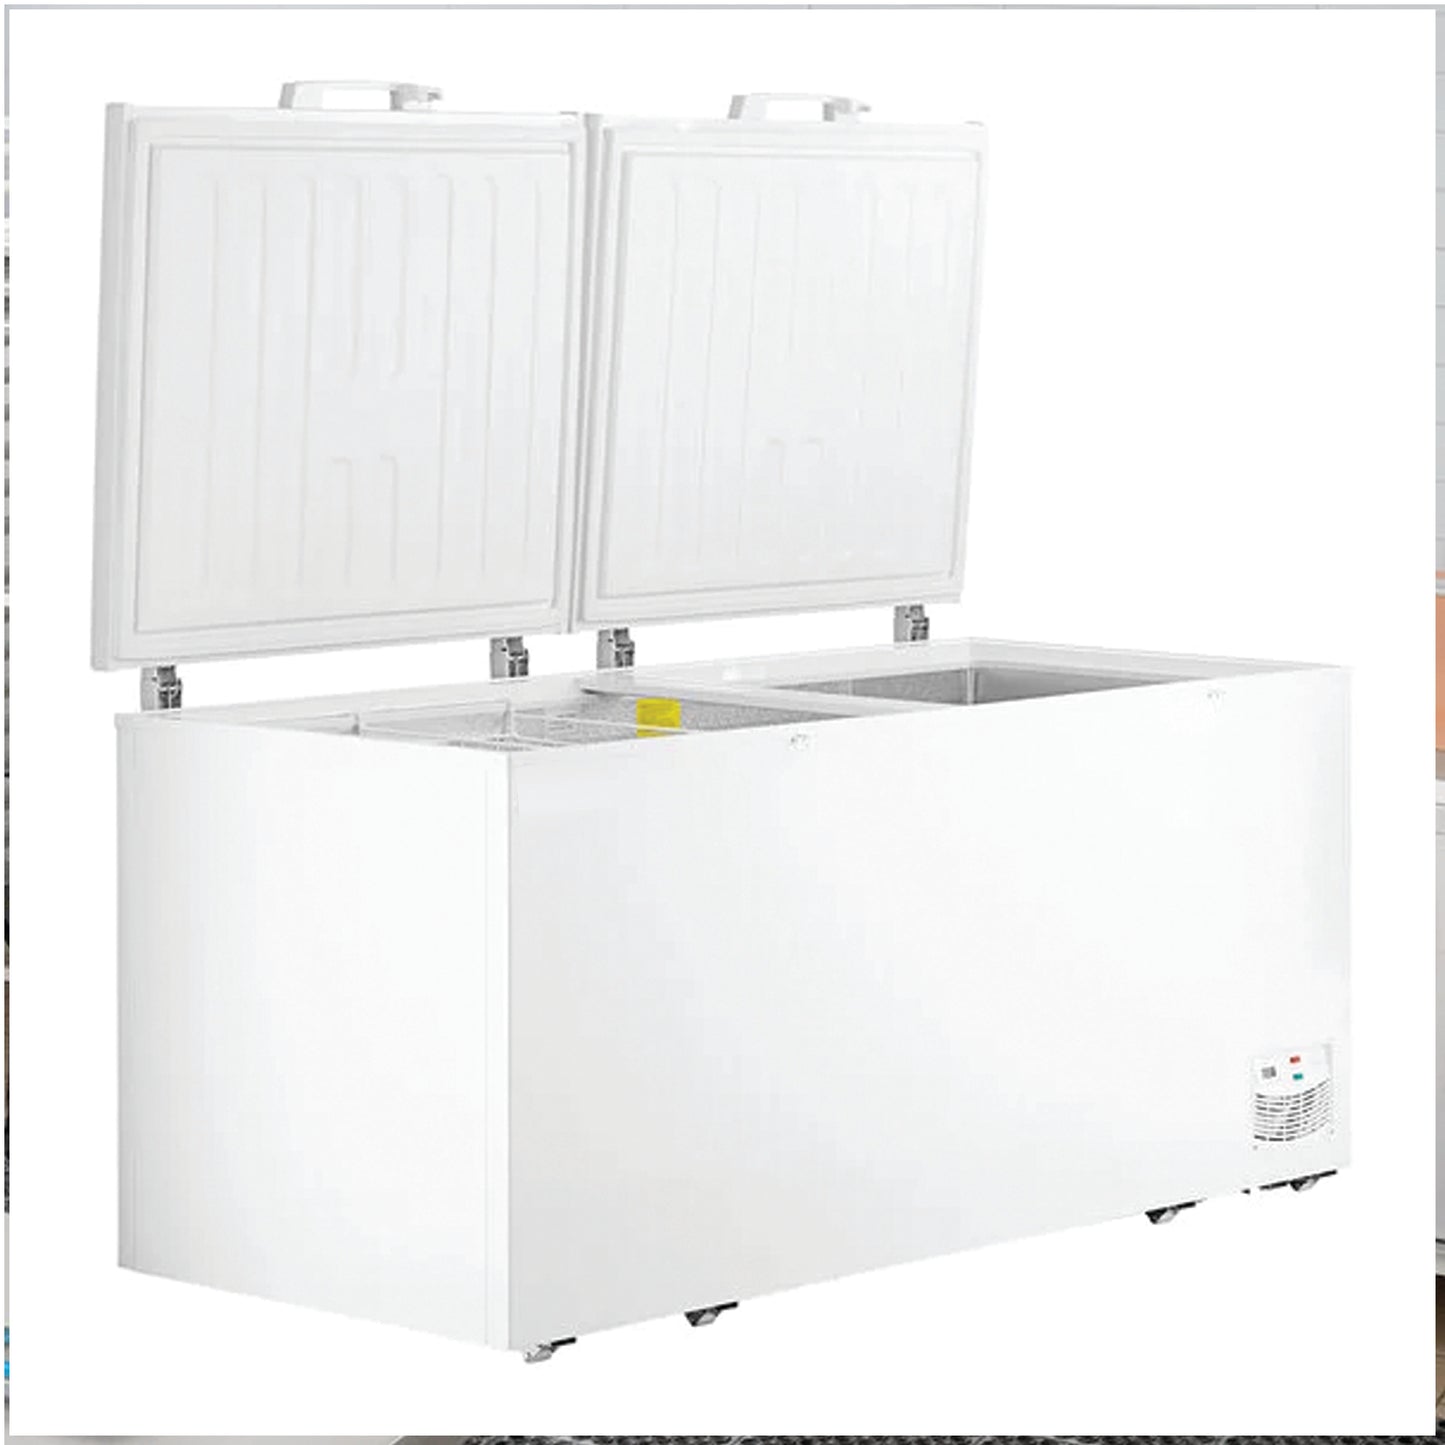 Advance Kitchen Pros - CF782033, 78" Commercial Chest Freezer 23.6 cu.ft. ETL